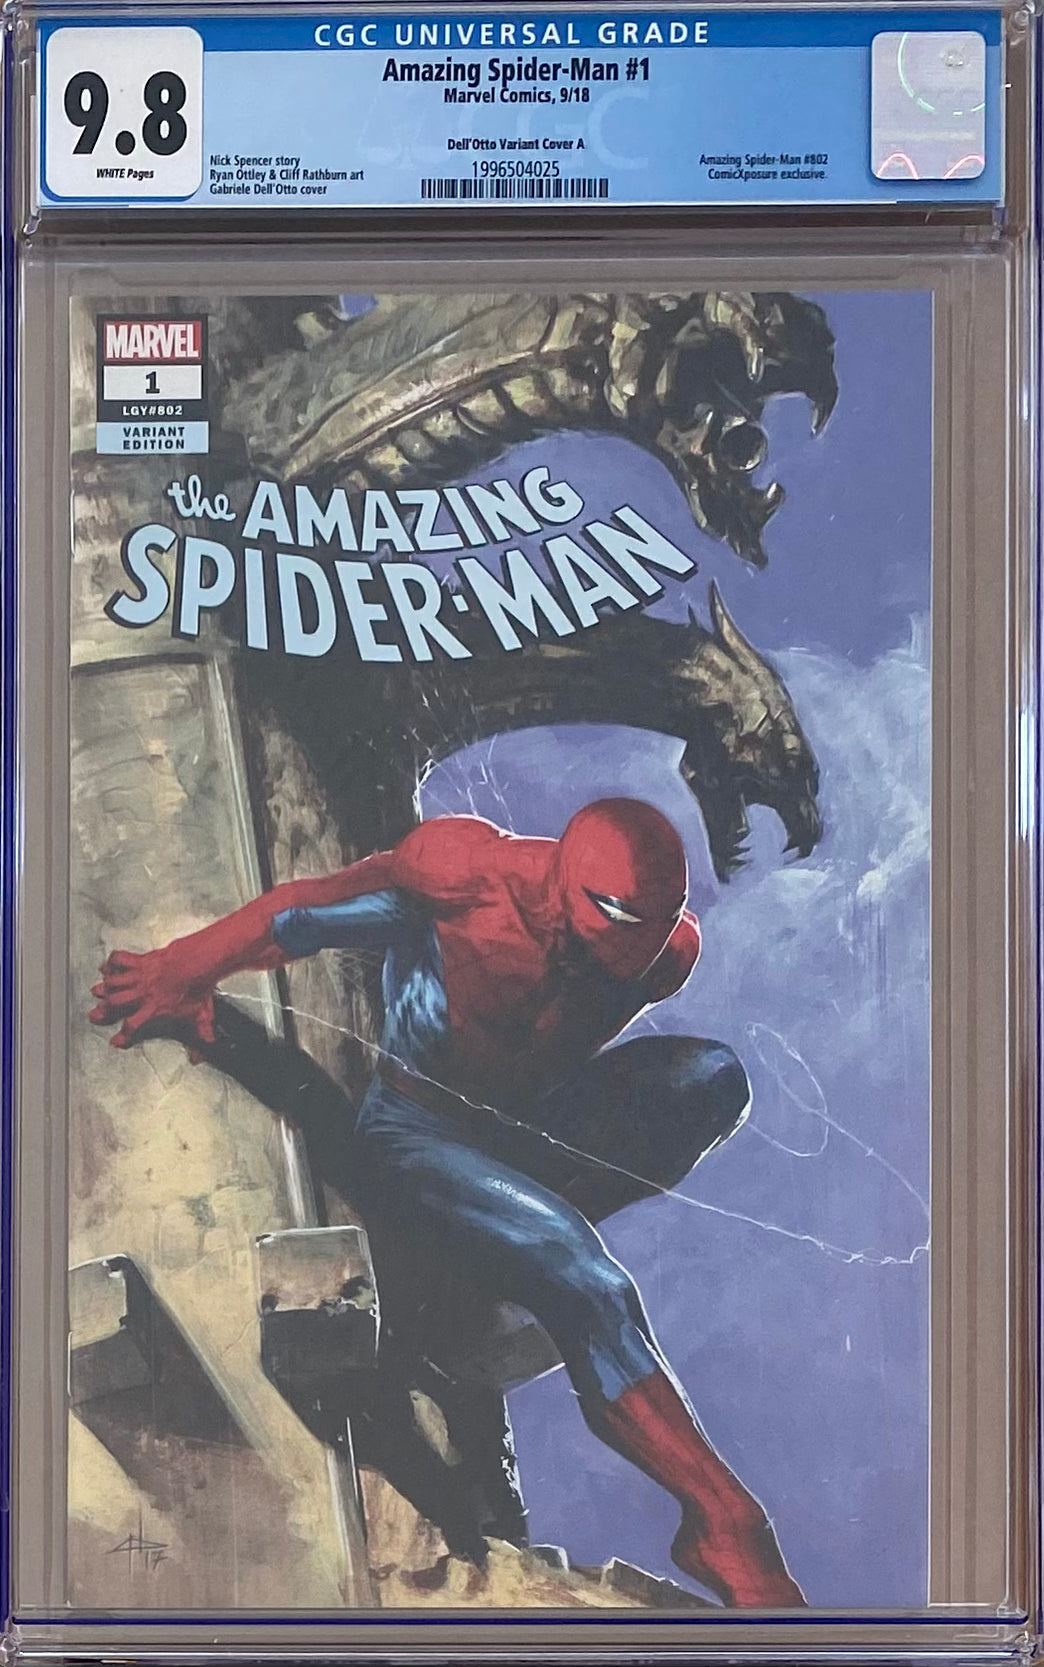 Amazing Spider-Man #1 ComicXposure/Dell'Otto Variant A CGC 9.8